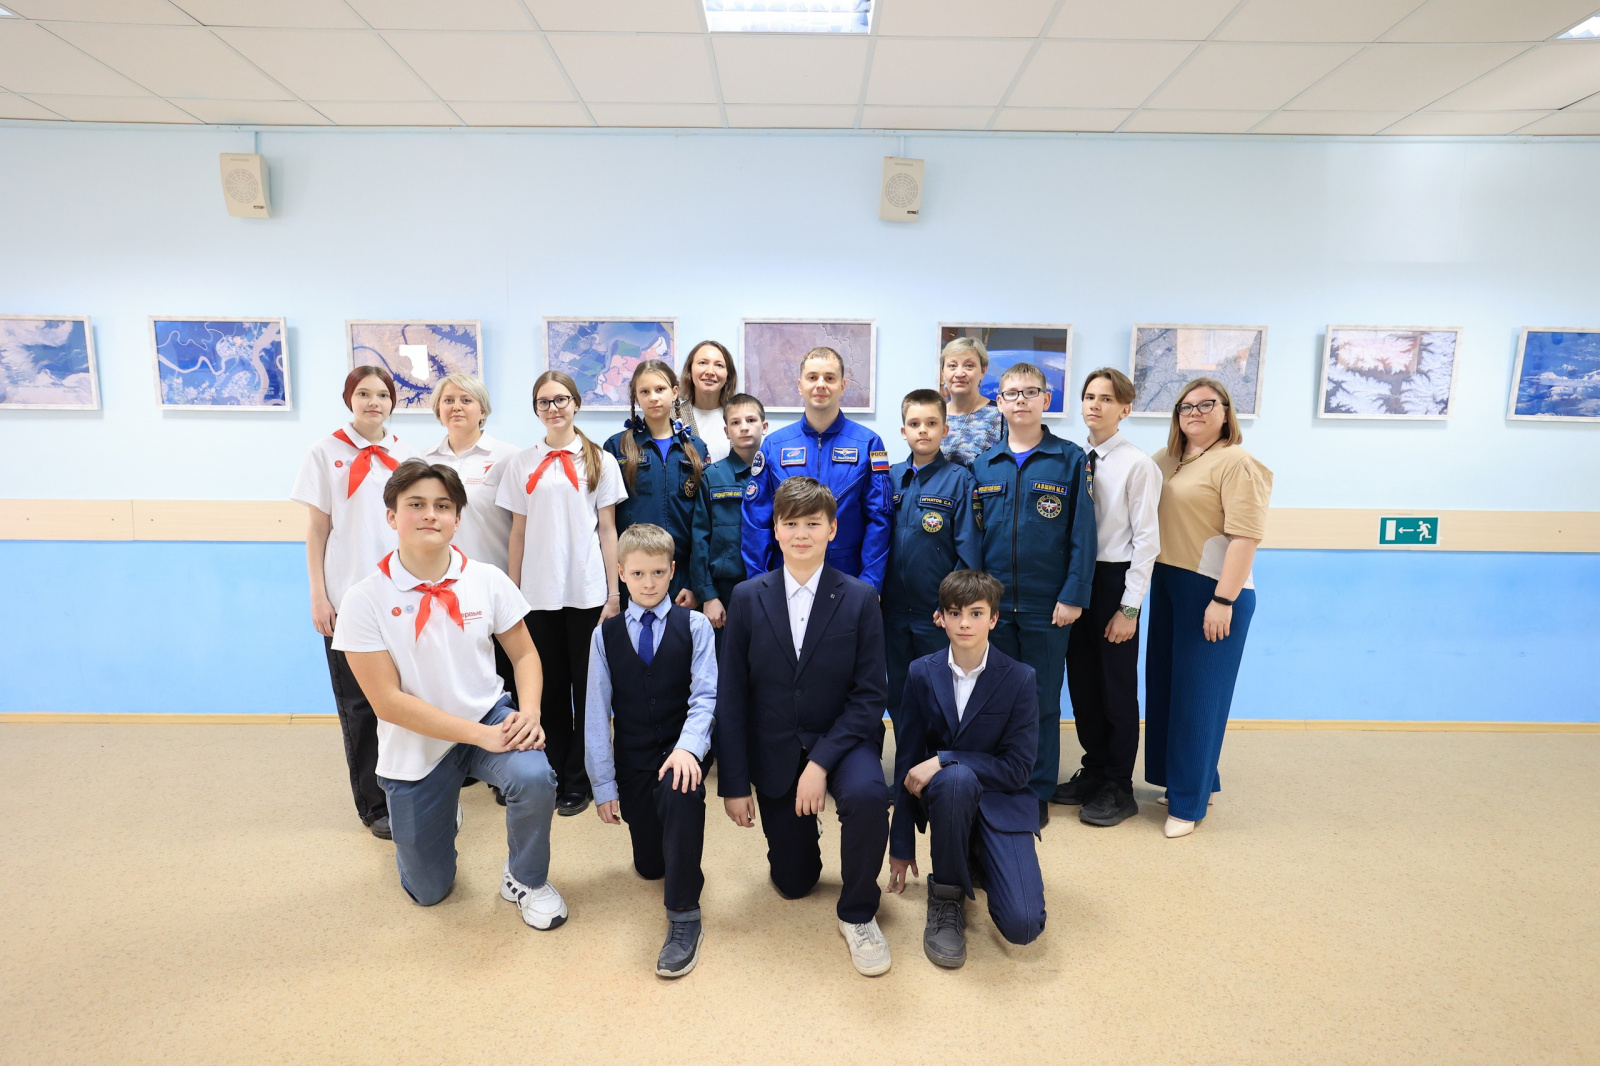 Покорители космоса: выставка в школе №2083 вдохновляет на новые открытия